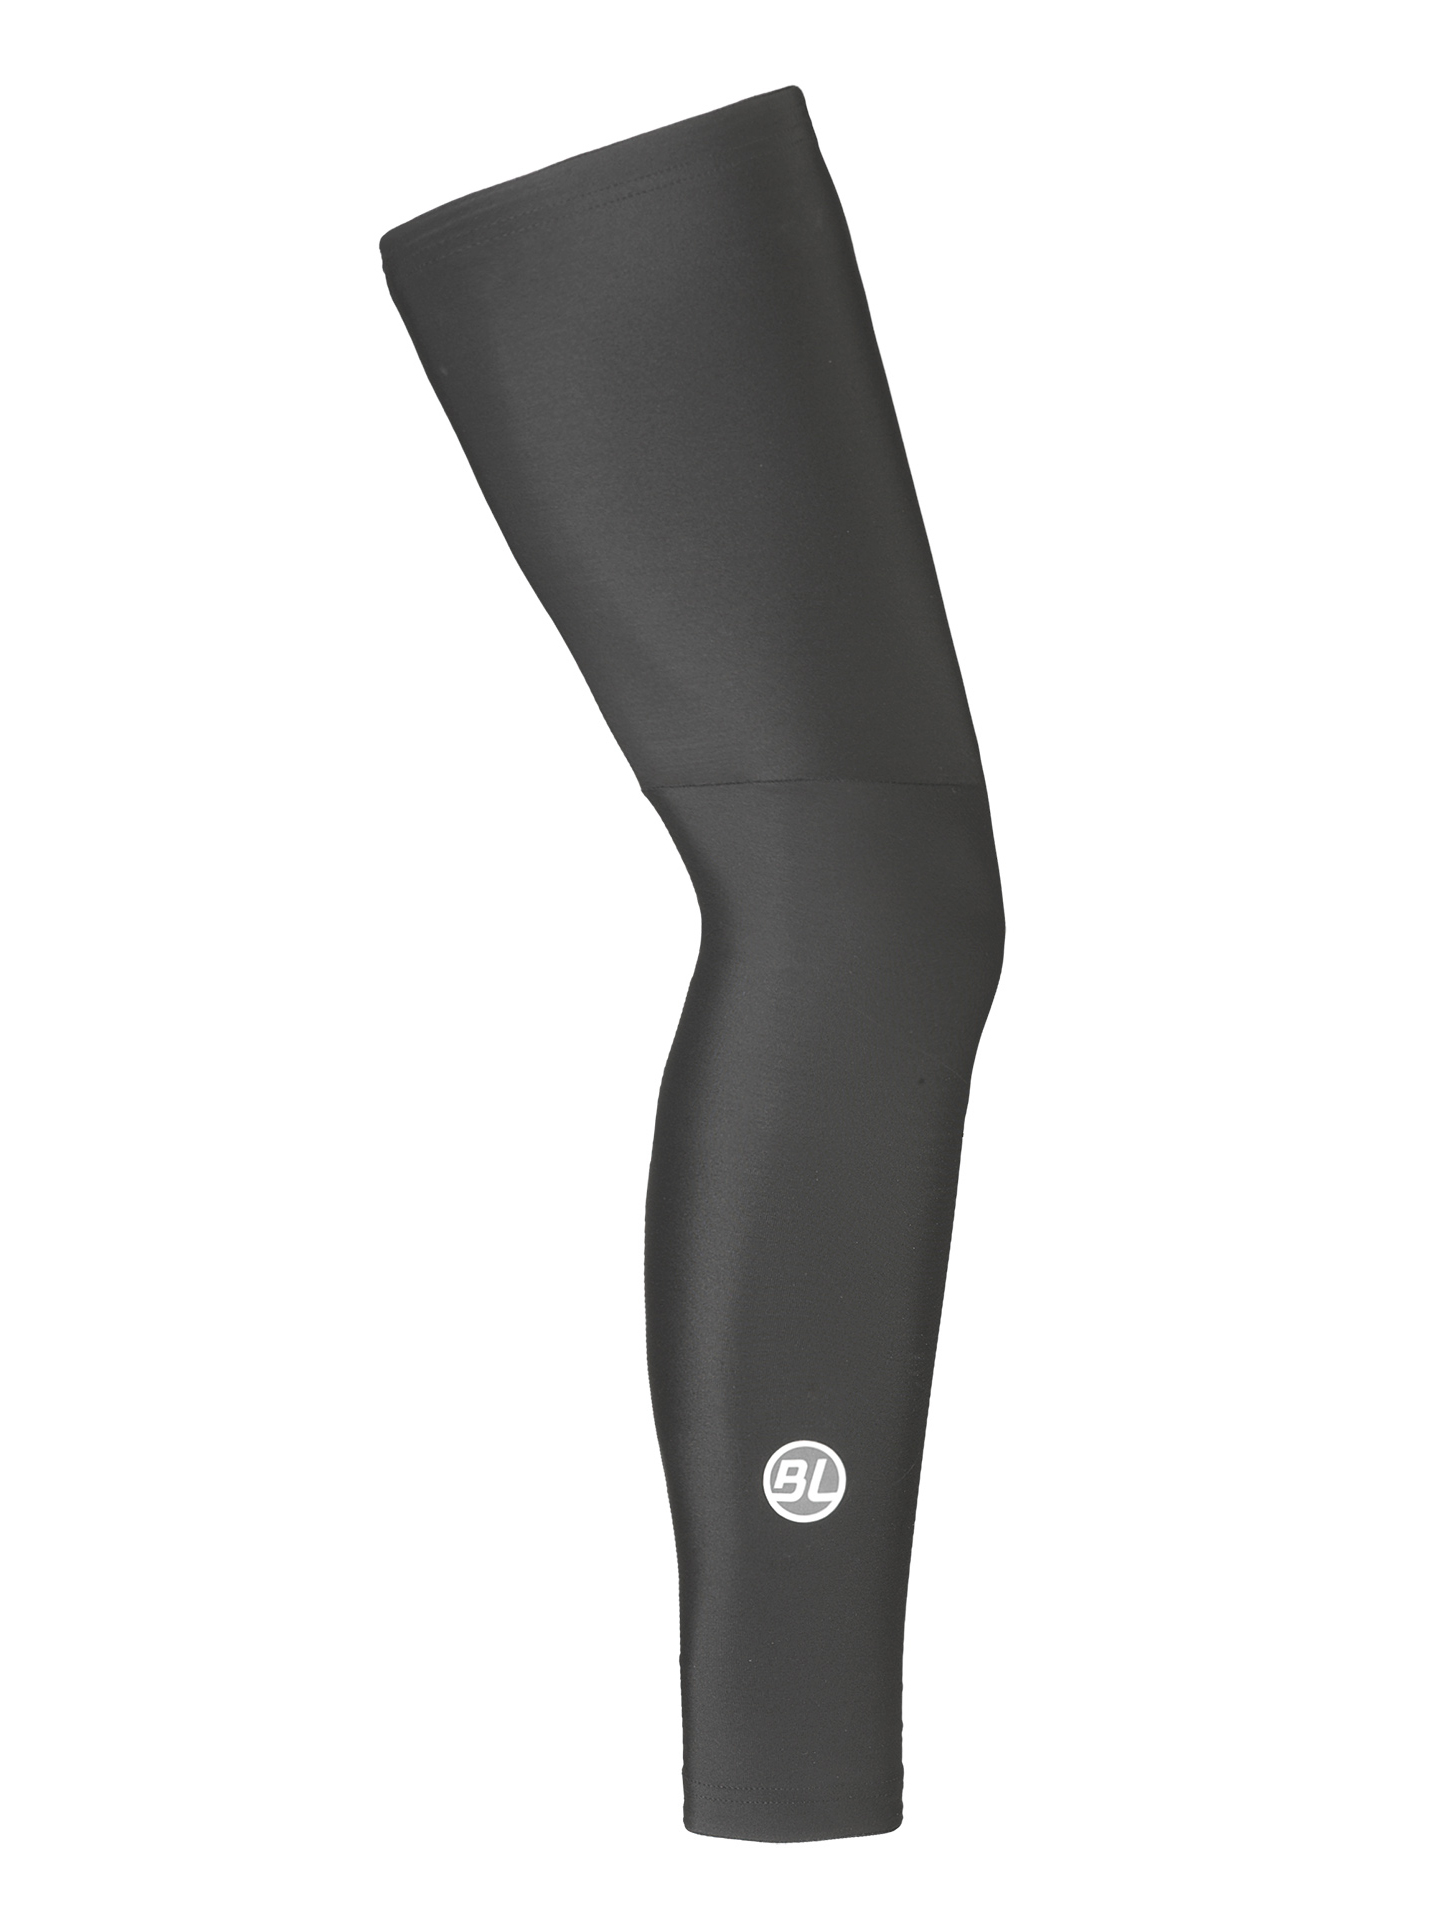 Утеплитель ног Bicycle Line FIANDRE, black (черный), XL фото 